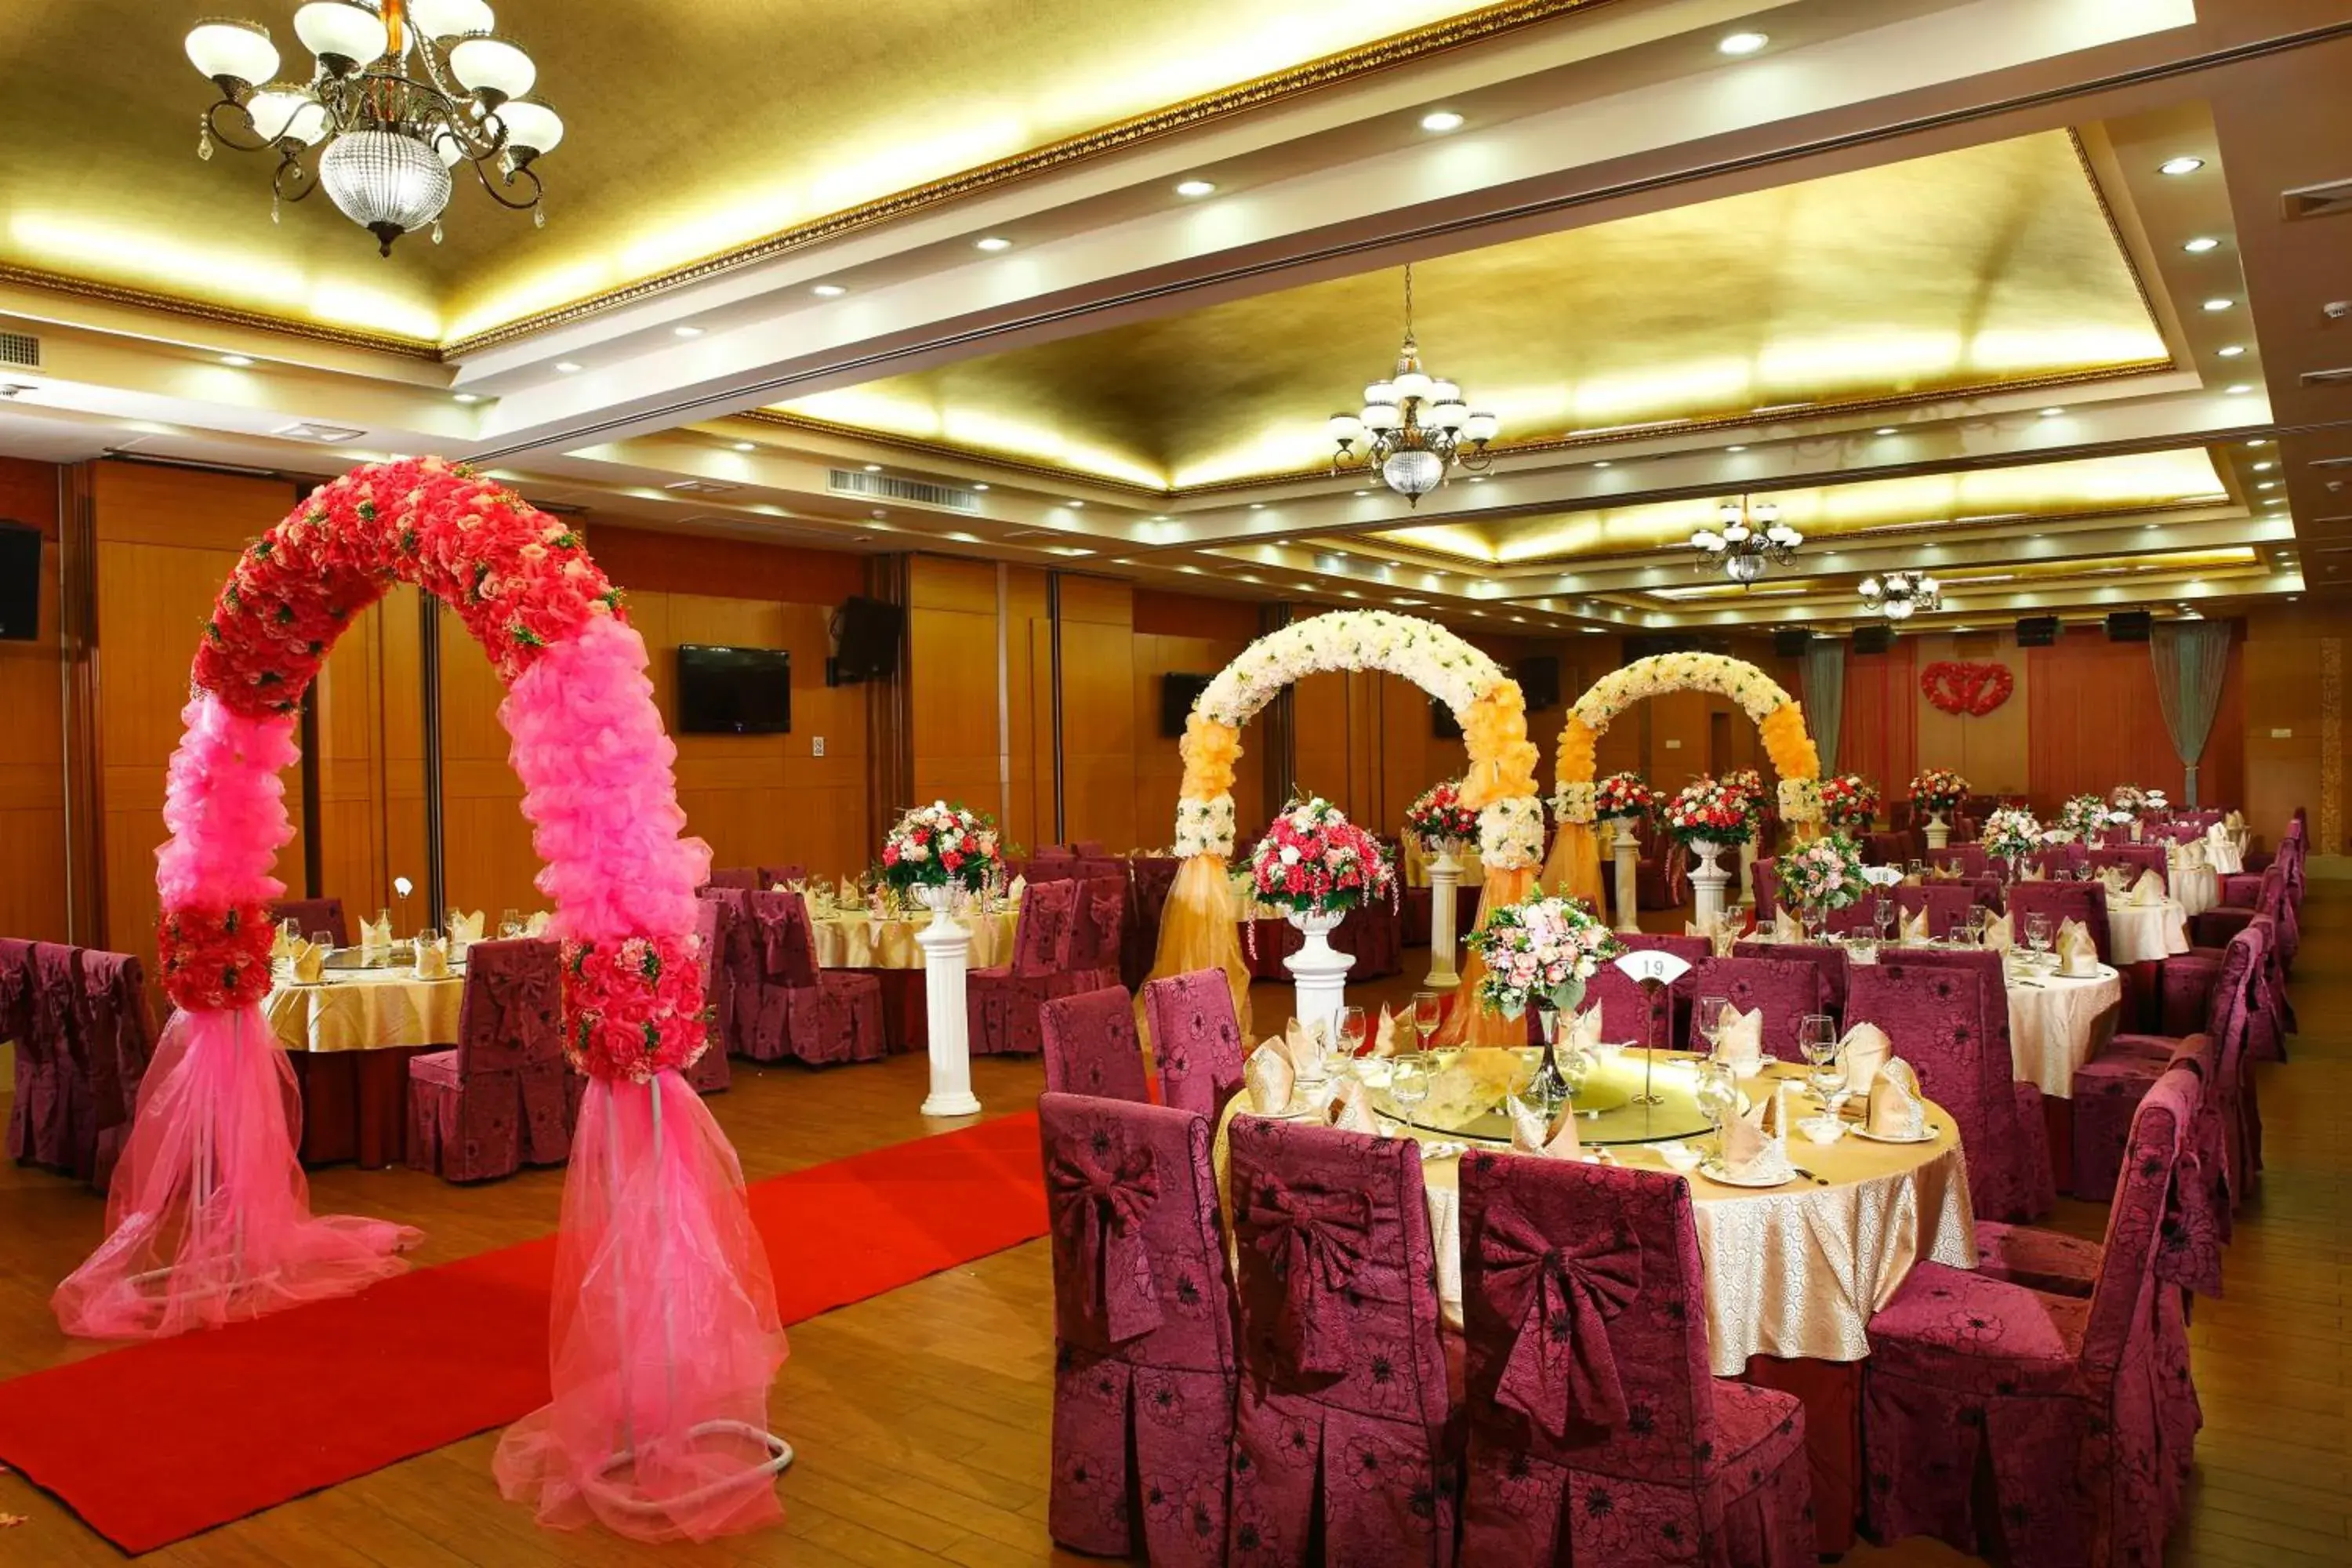 Banquet/Function facilities, Banquet Facilities in Royal Garden Hotel